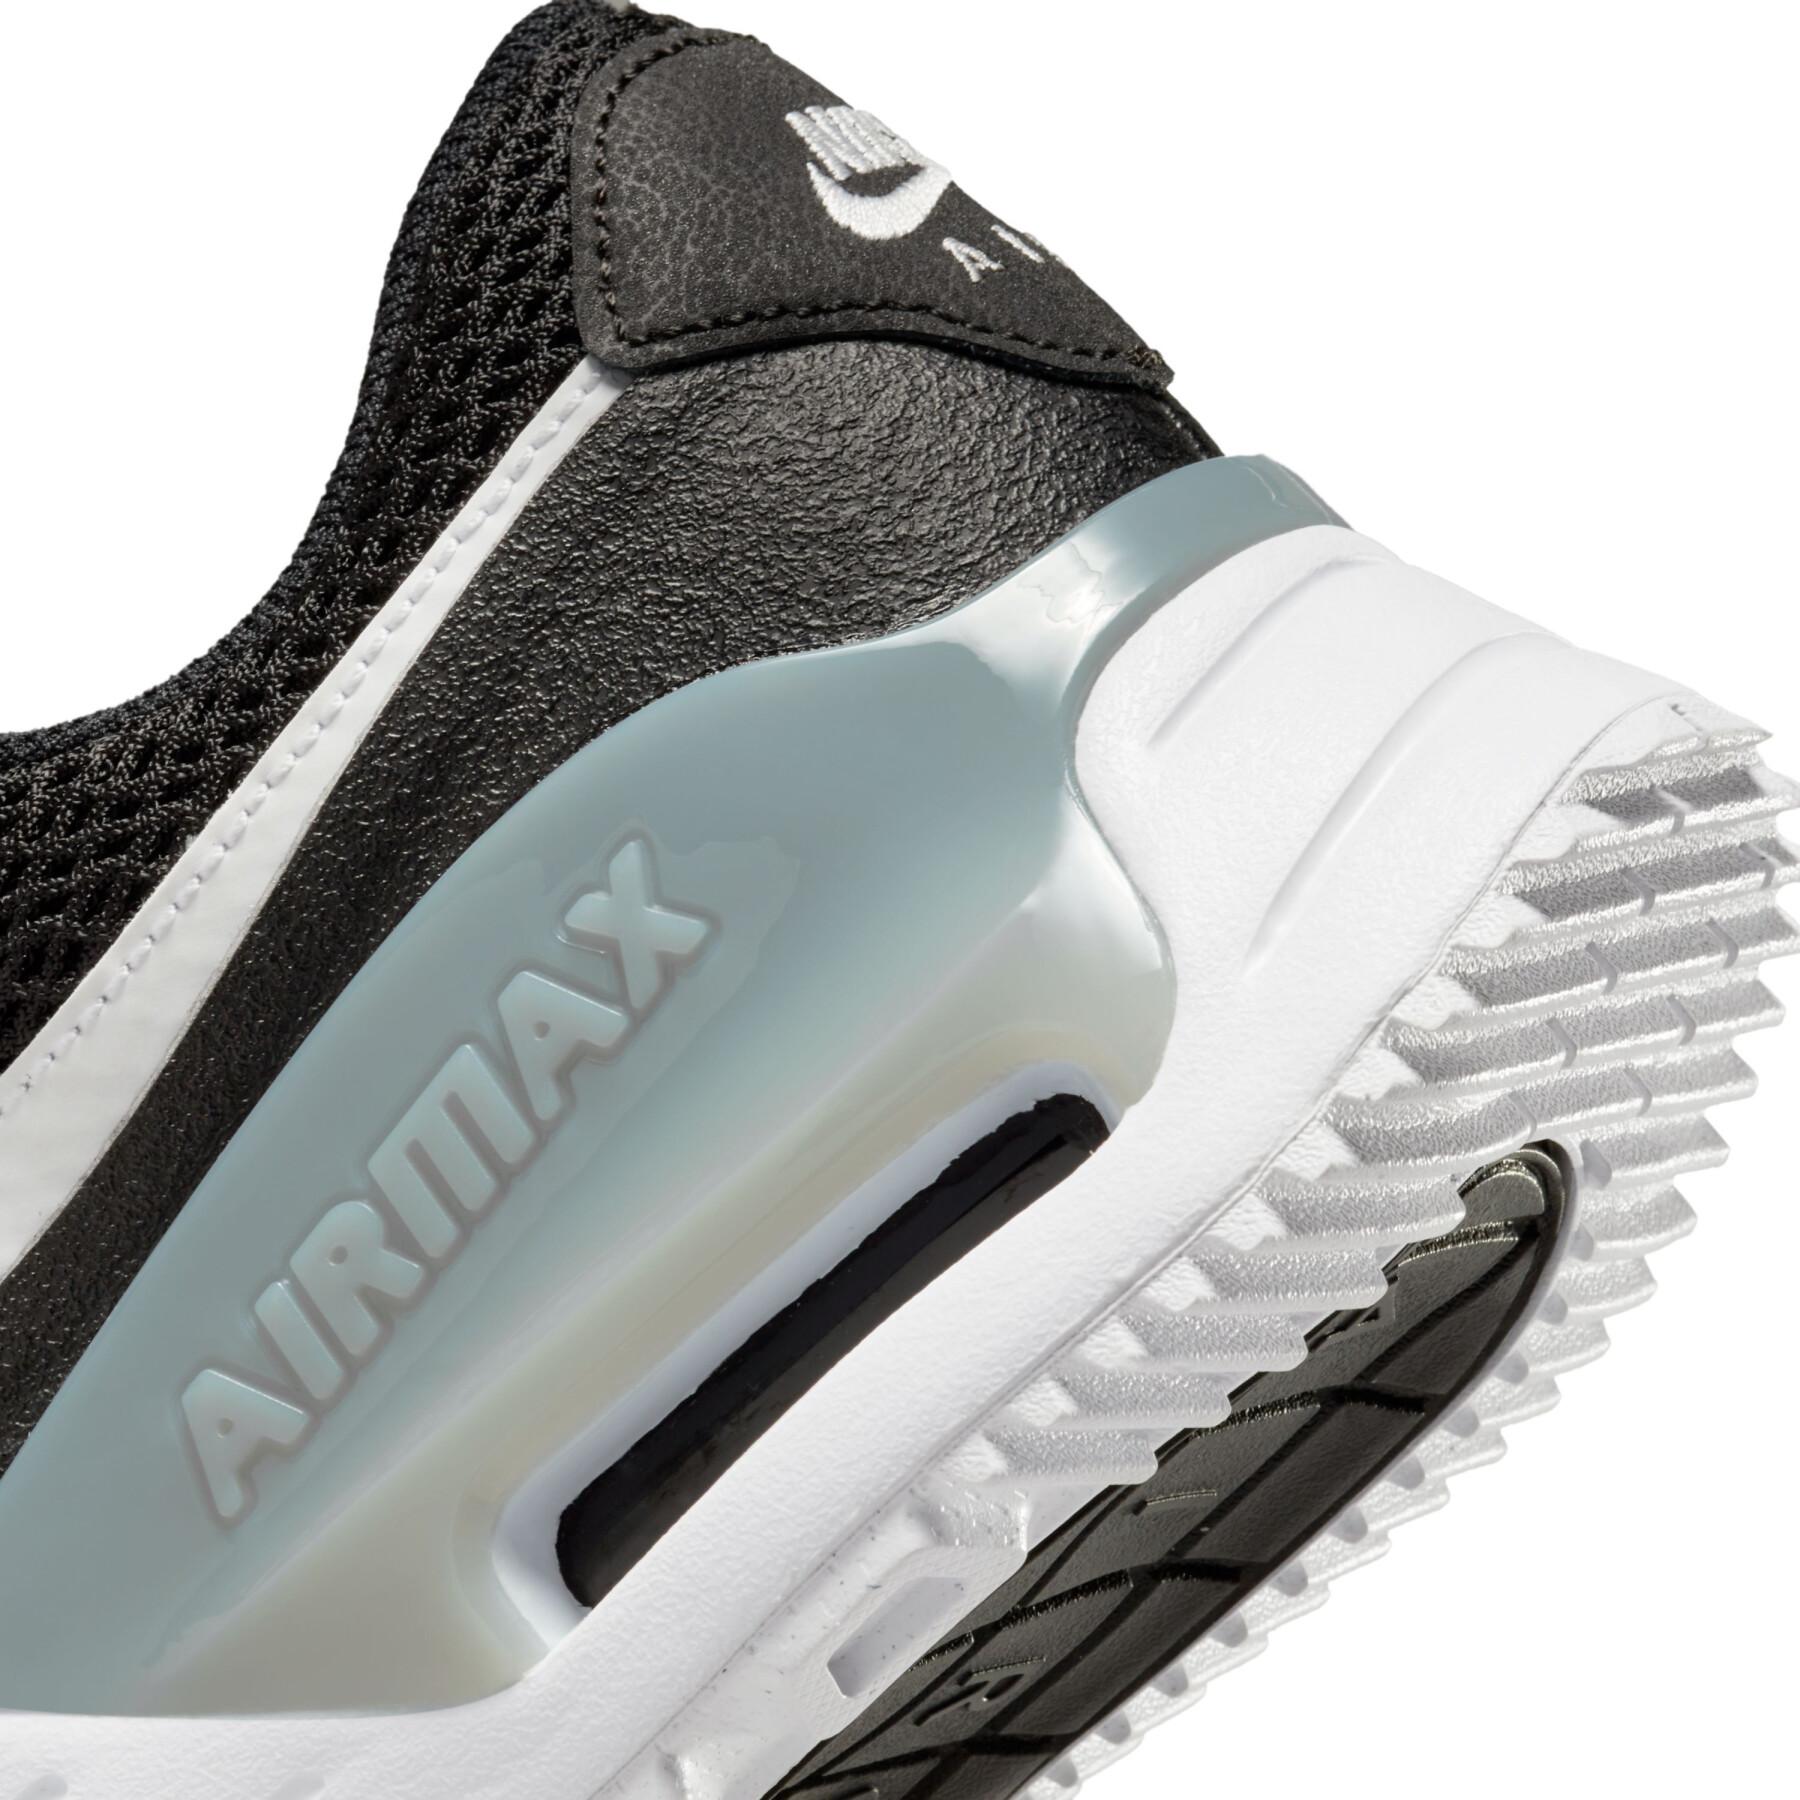 Sneakers für Damen Nike Air Max Systm